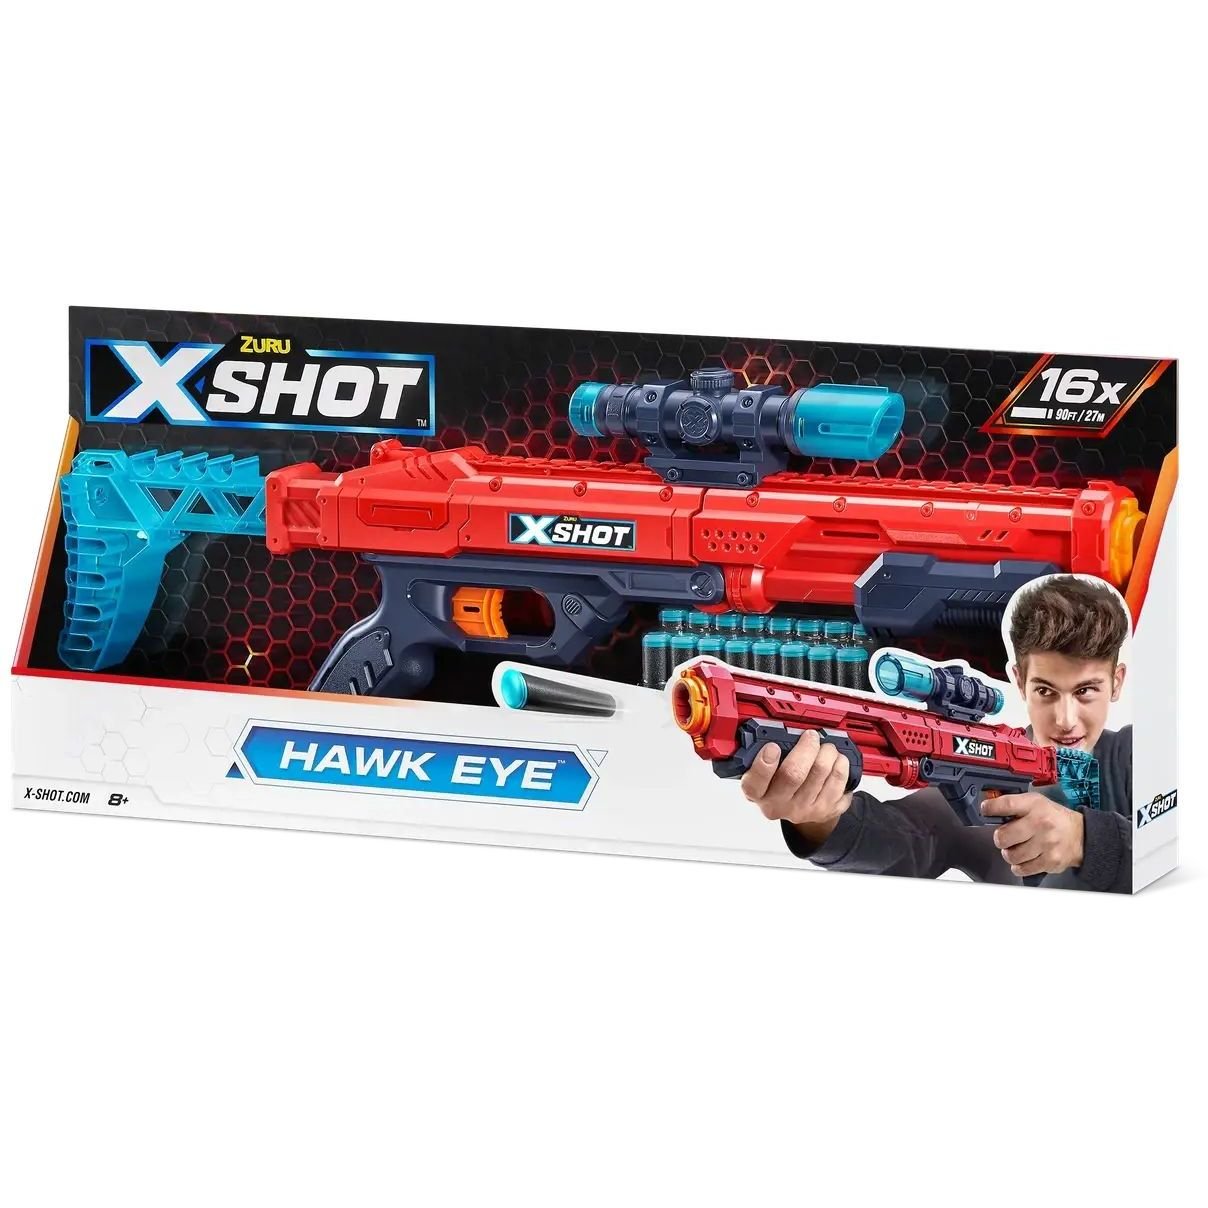 Скорострельный бластер Zuru X-Shot Red Excel Hawk Eye, 16 патронов (36435R) - фото 1